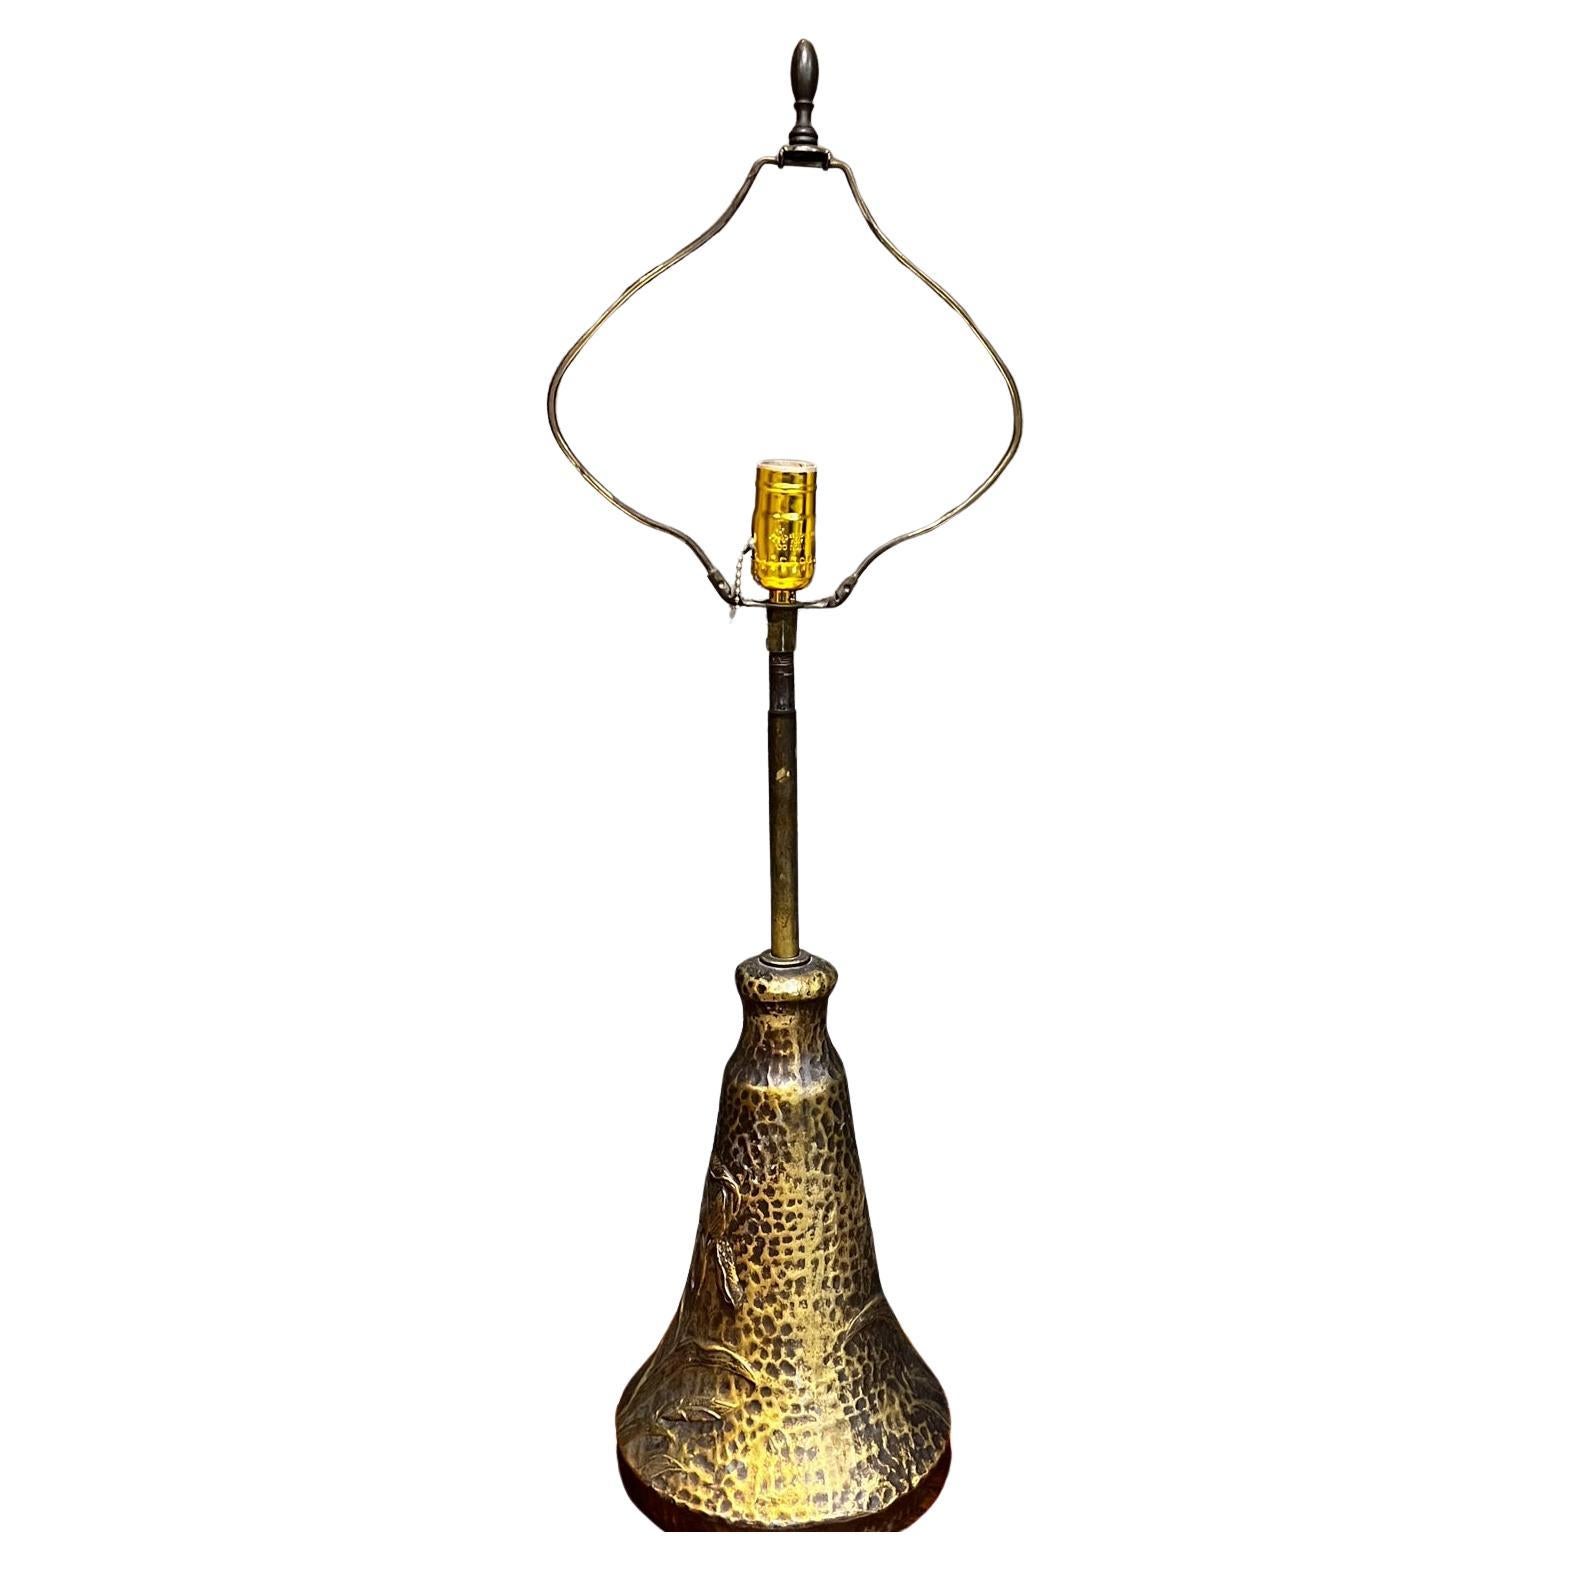 1970s Style Arthur Court Faux Bronze Table Lamp Art Nouveau 